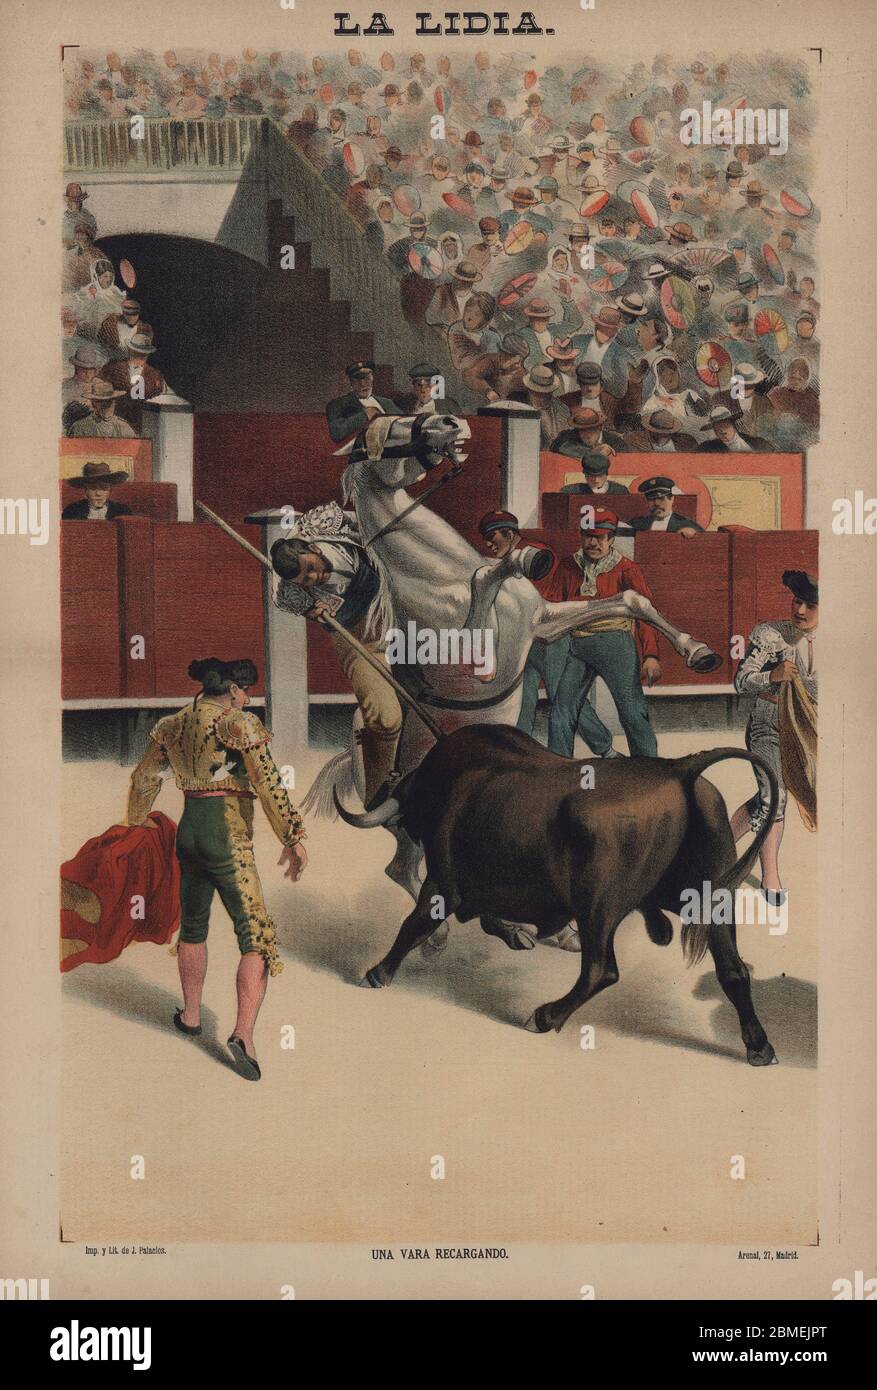 La lidia. Una vara recargando. Un picador inclinado sobre el cuello del caballo castigando al toro con una vara. Año 1888. Foto Stock